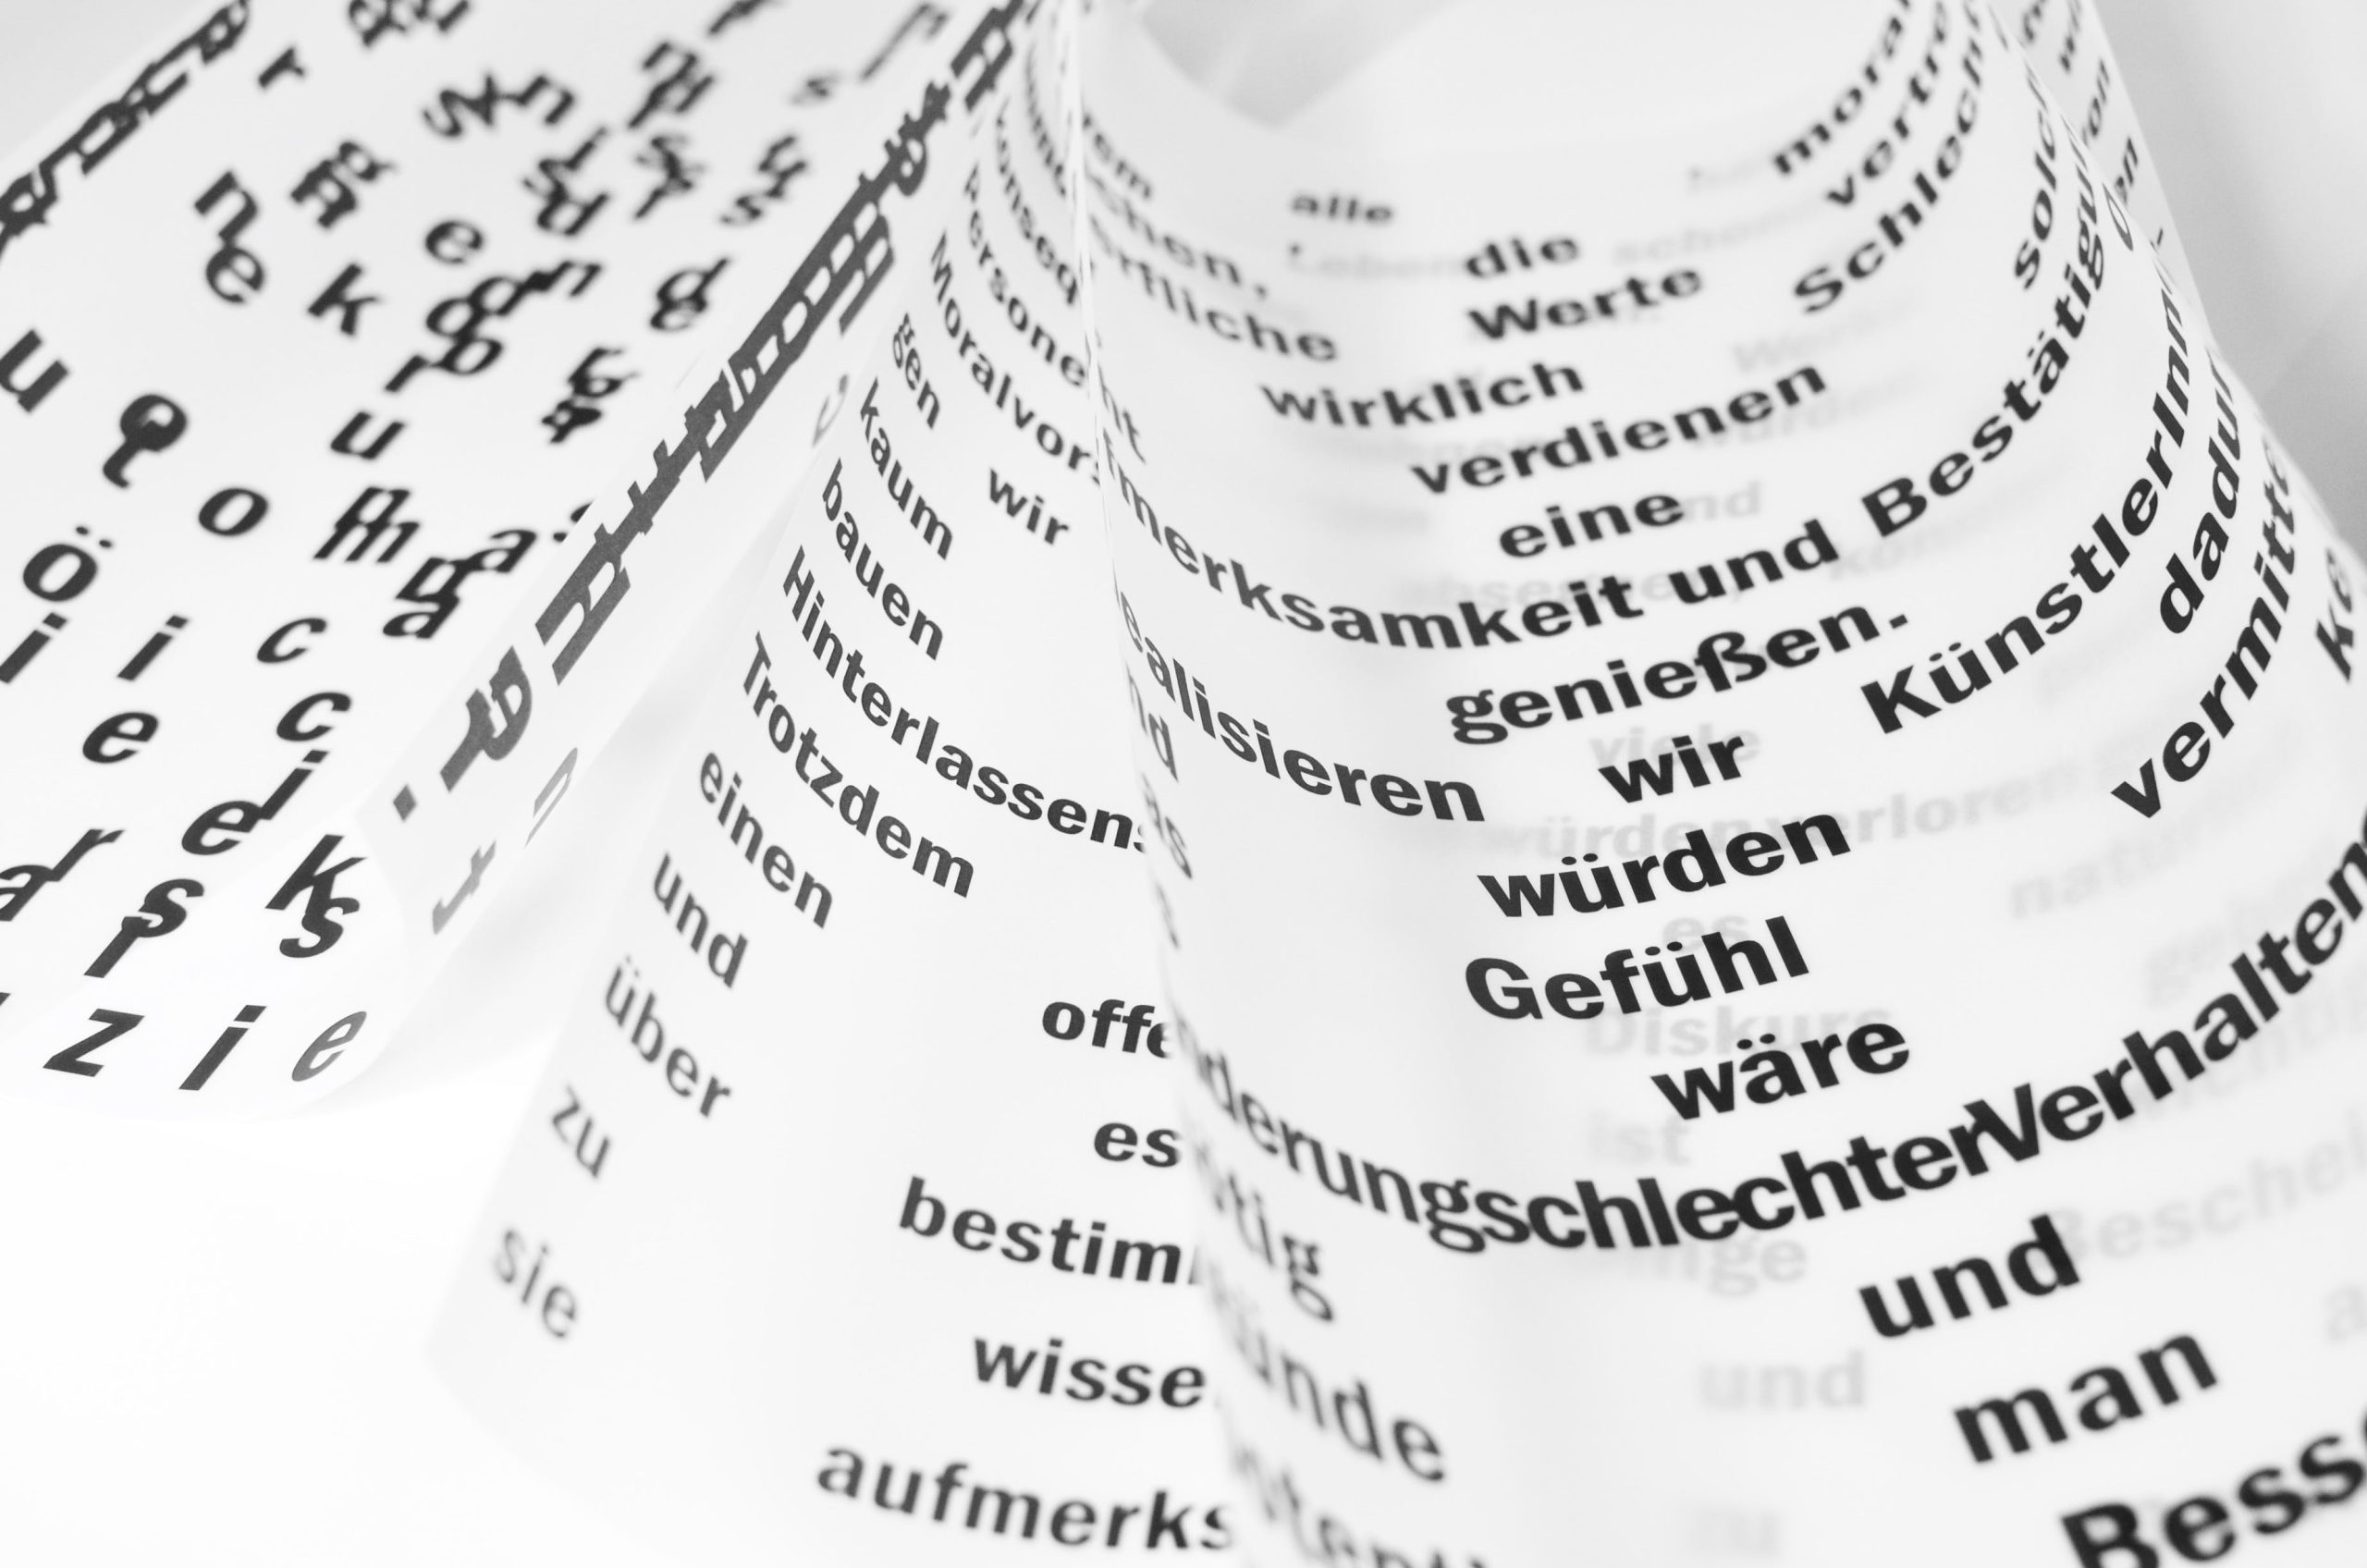 Agencias de traducción: ¿Qué servicios pueden ofrecerte para tus necesidades lingüísticas?